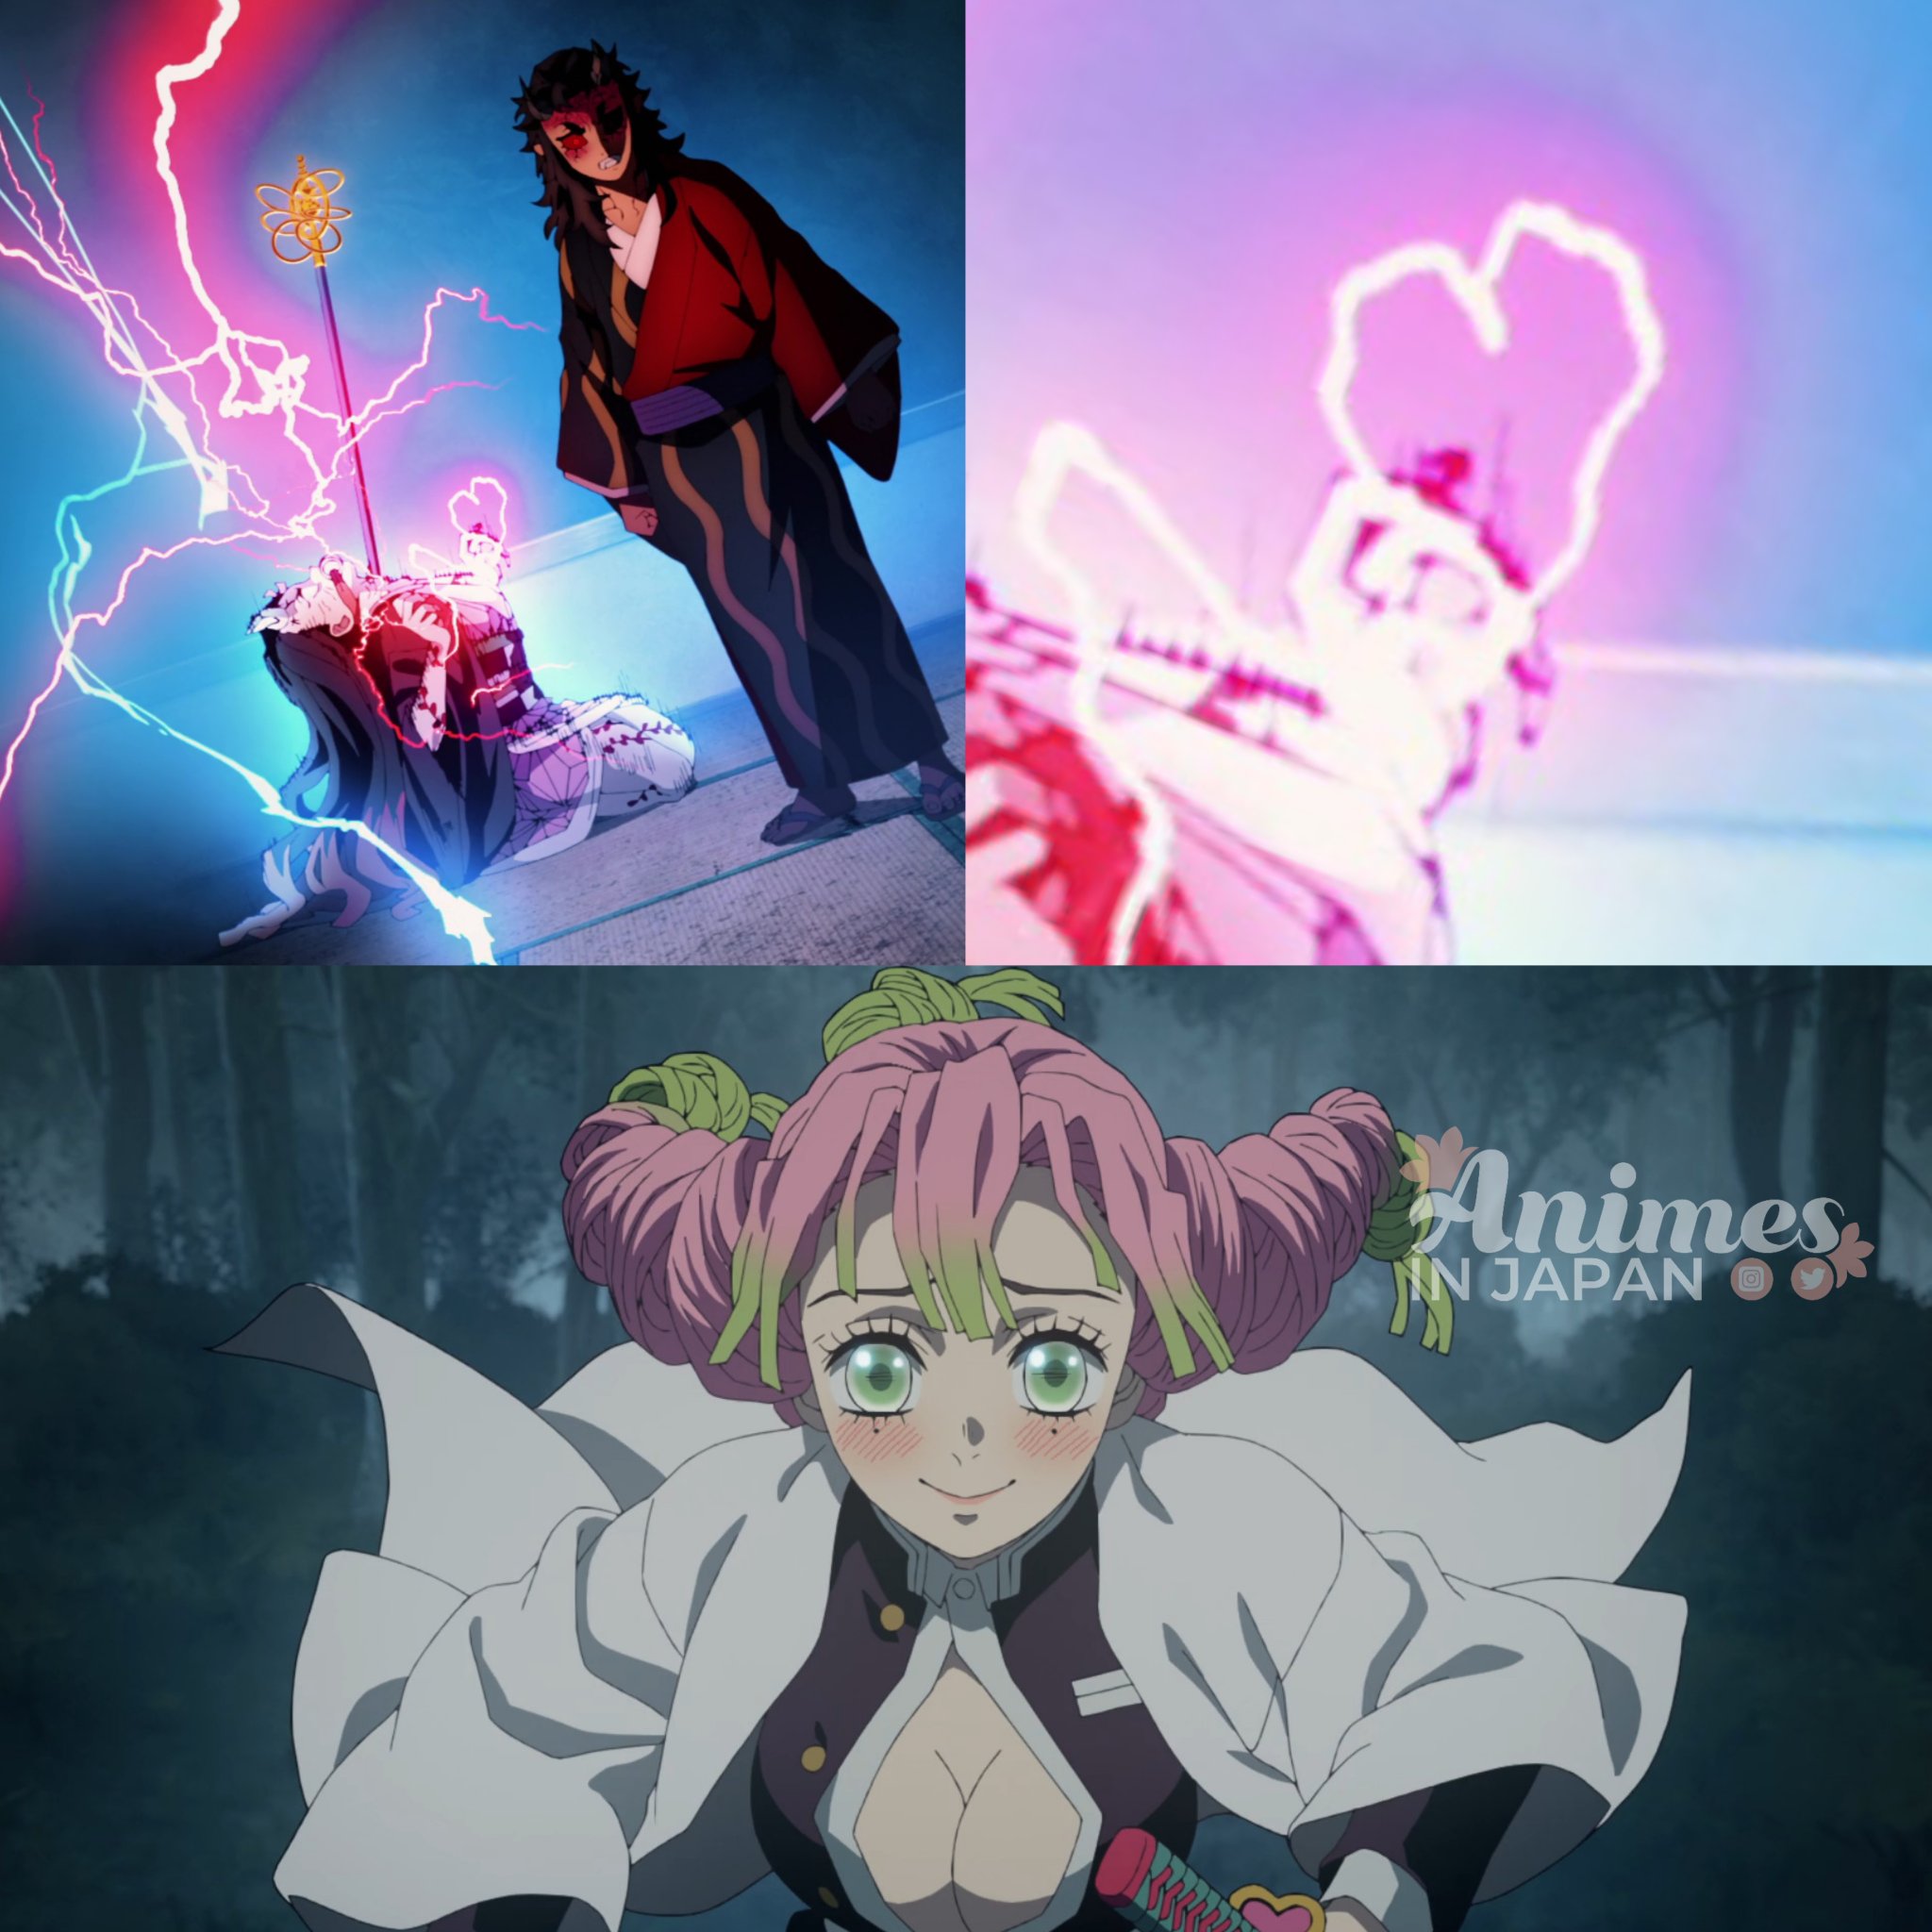 Animes In Japan 🎄 on X: RECEBA! 🤣 Anime: Demon Slayer: Kimetsu no Yaiba:  Katanakaji no sato-hen. #PrimaveraNaAIJ 🌸 #鬼滅の刃  /  X